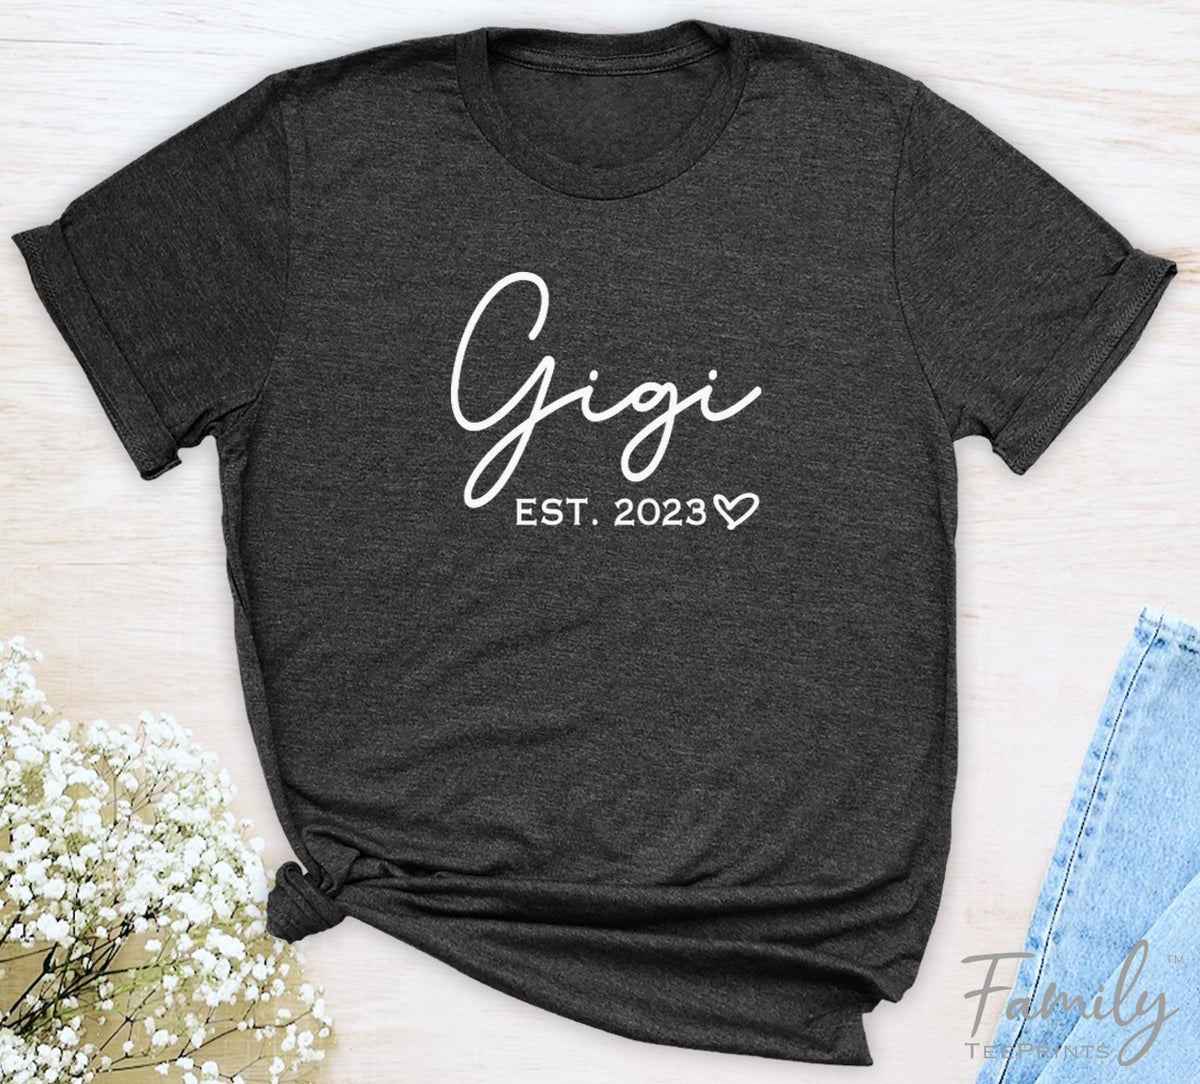 Gigi Est. 2023 - Unisex T-shirt - Gigi Shirt - Gift For Gigi To Be - familyteeprints